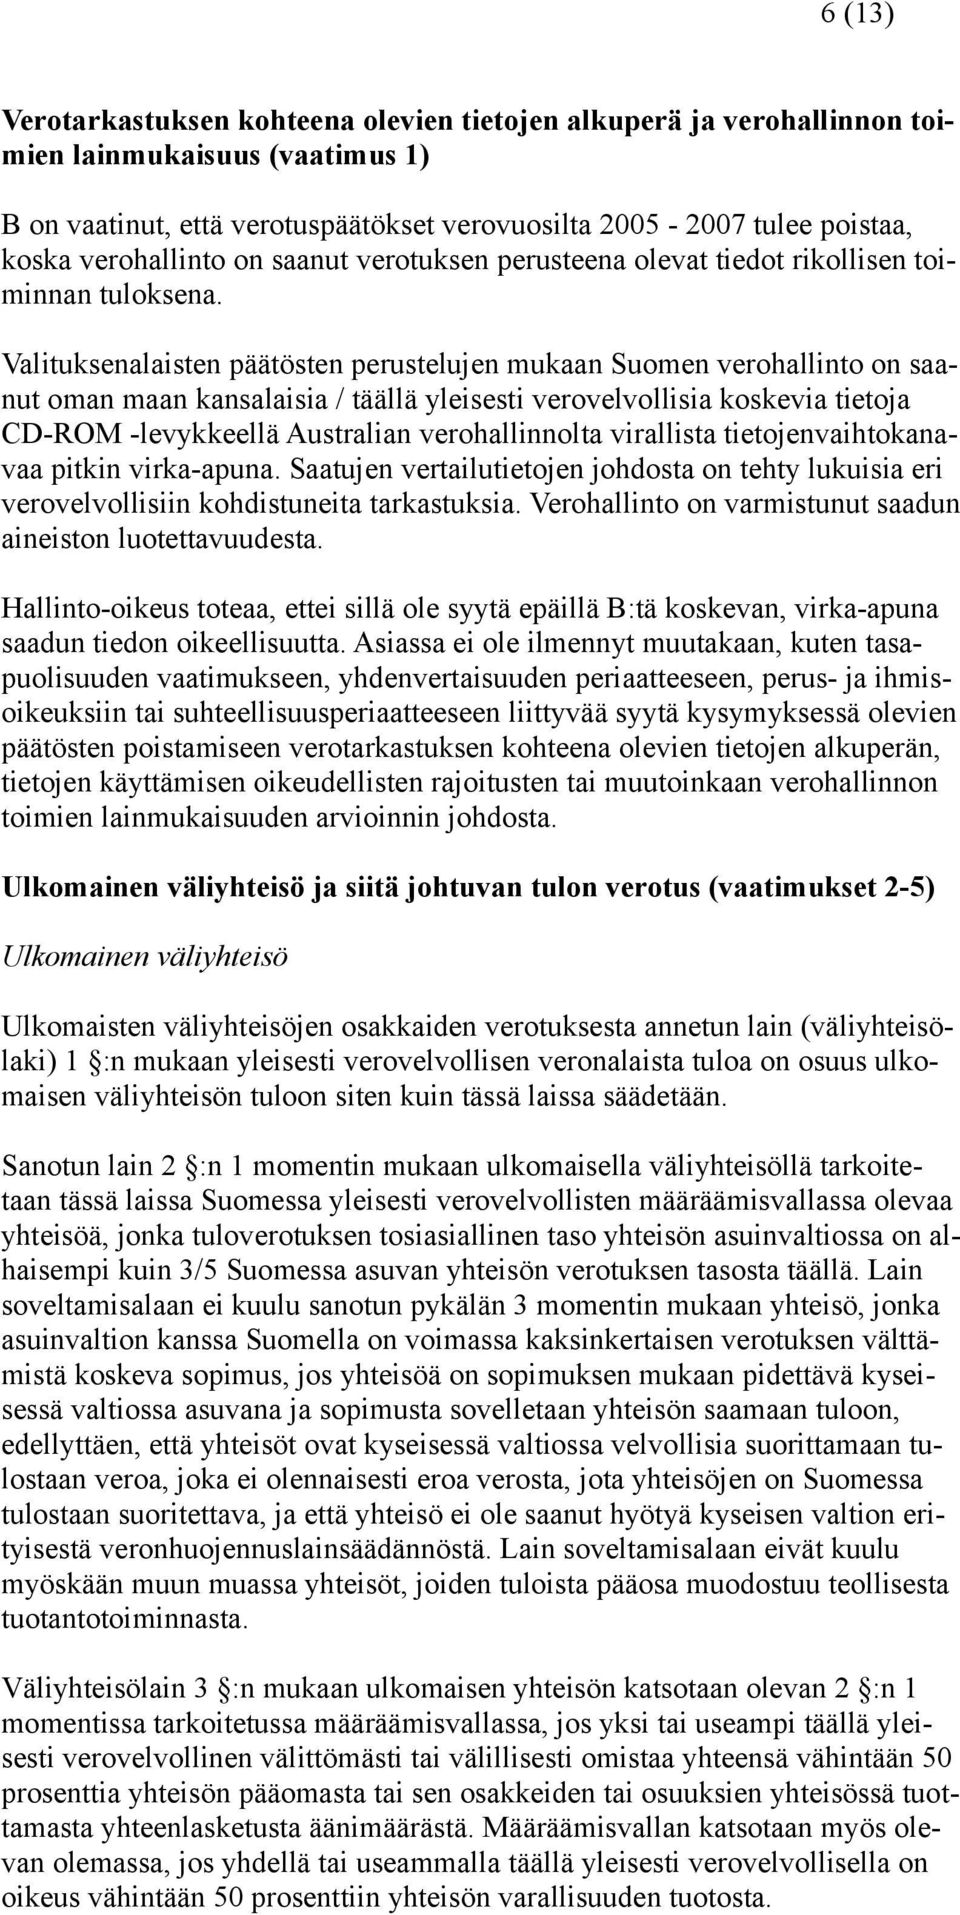 Valituksenalaisten päätösten perustelujen mukaan Suomen verohallinto on saanut oman maan kansalaisia / täällä yleisesti verovelvollisia koskevia tietoja CD-ROM -levykkeellä Australian verohallinnolta